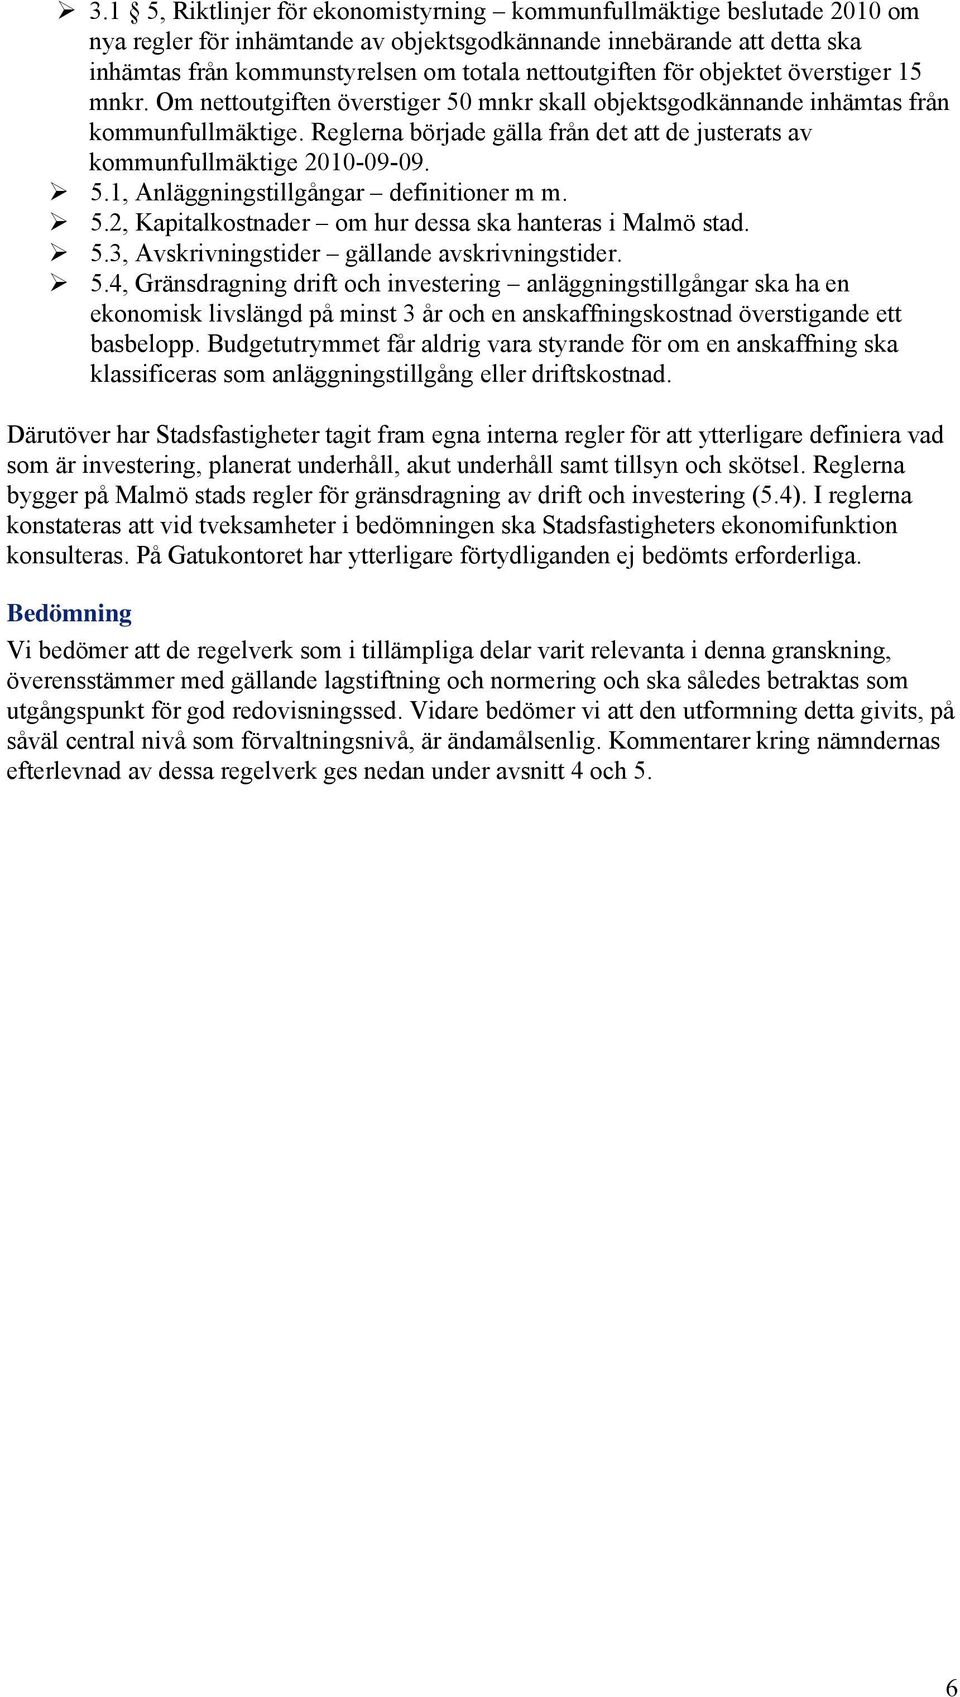 Reglerna började gälla från det att de justerats av kommunfullmäktige 2010-09-09. 5.1, Anläggningstillgångar definitioner m m. 5.2, Kapitalkostnader om hur dessa ska hanteras i Malmö stad. 5.3, Avskrivningstider gällande avskrivningstider.